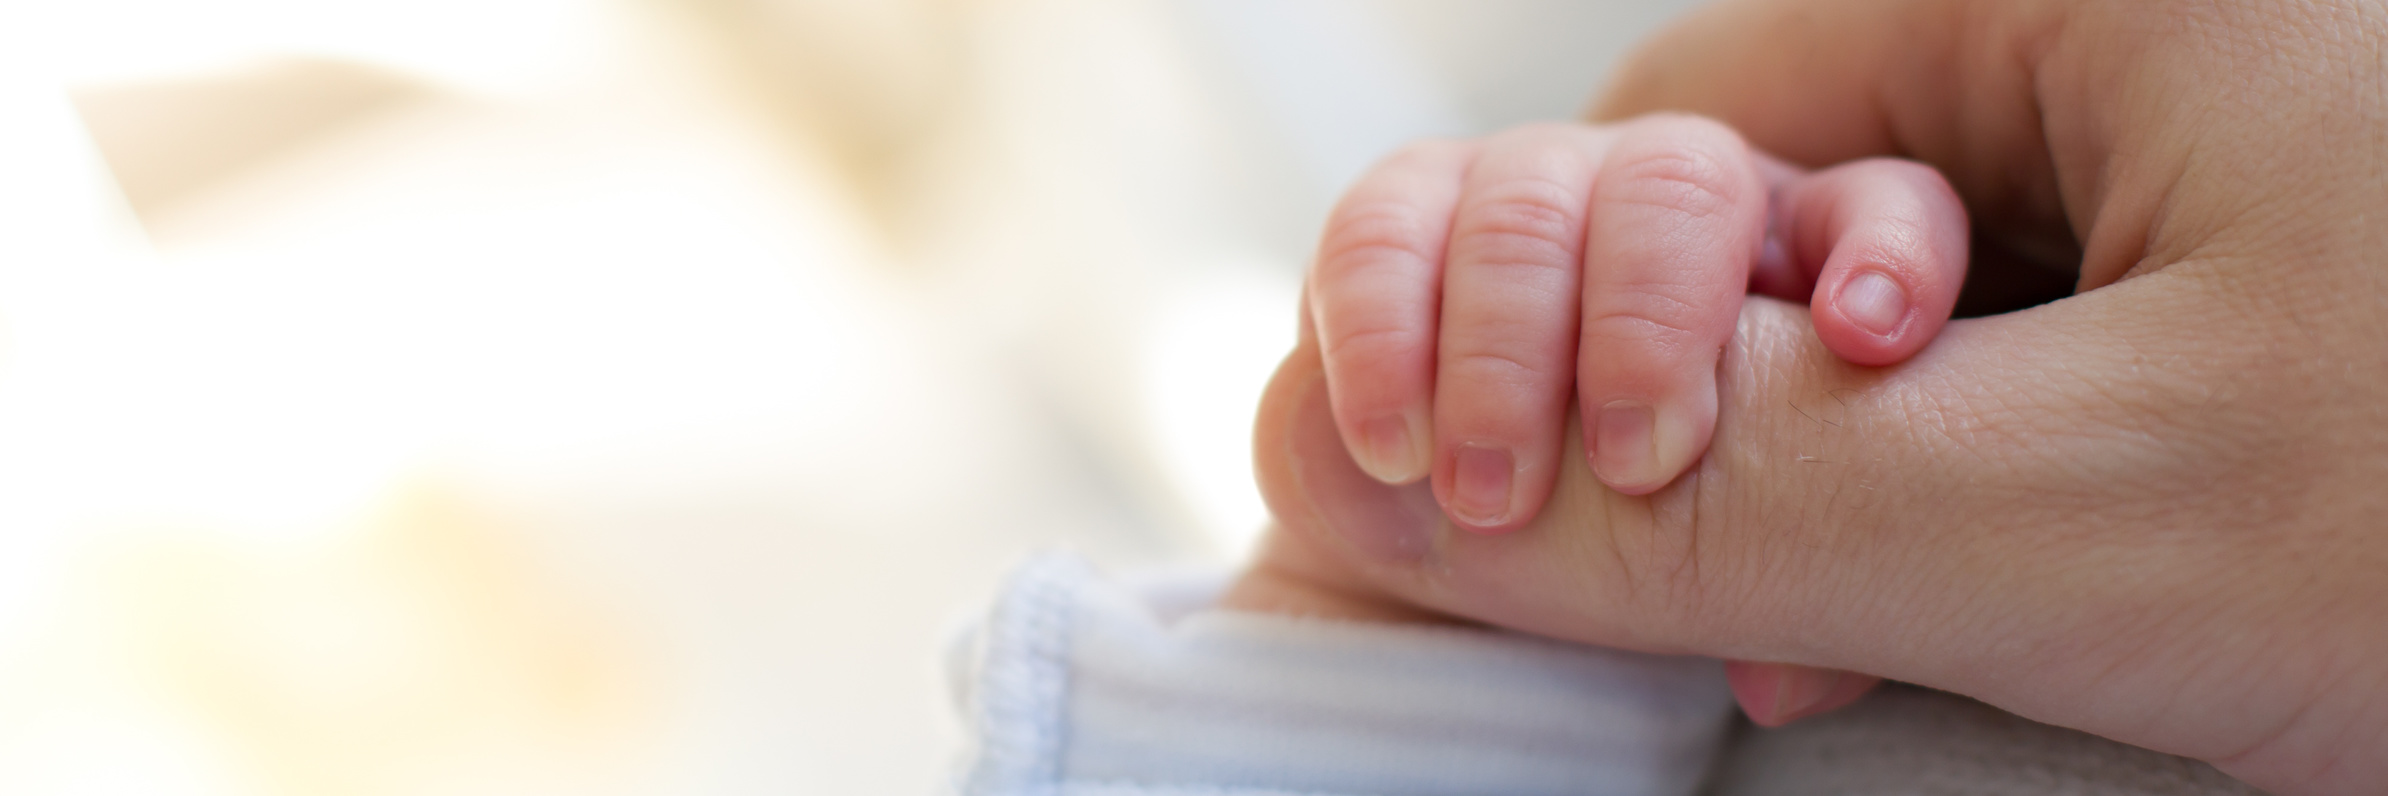 Nace el primer bebé concebido en España gracias a un wearable